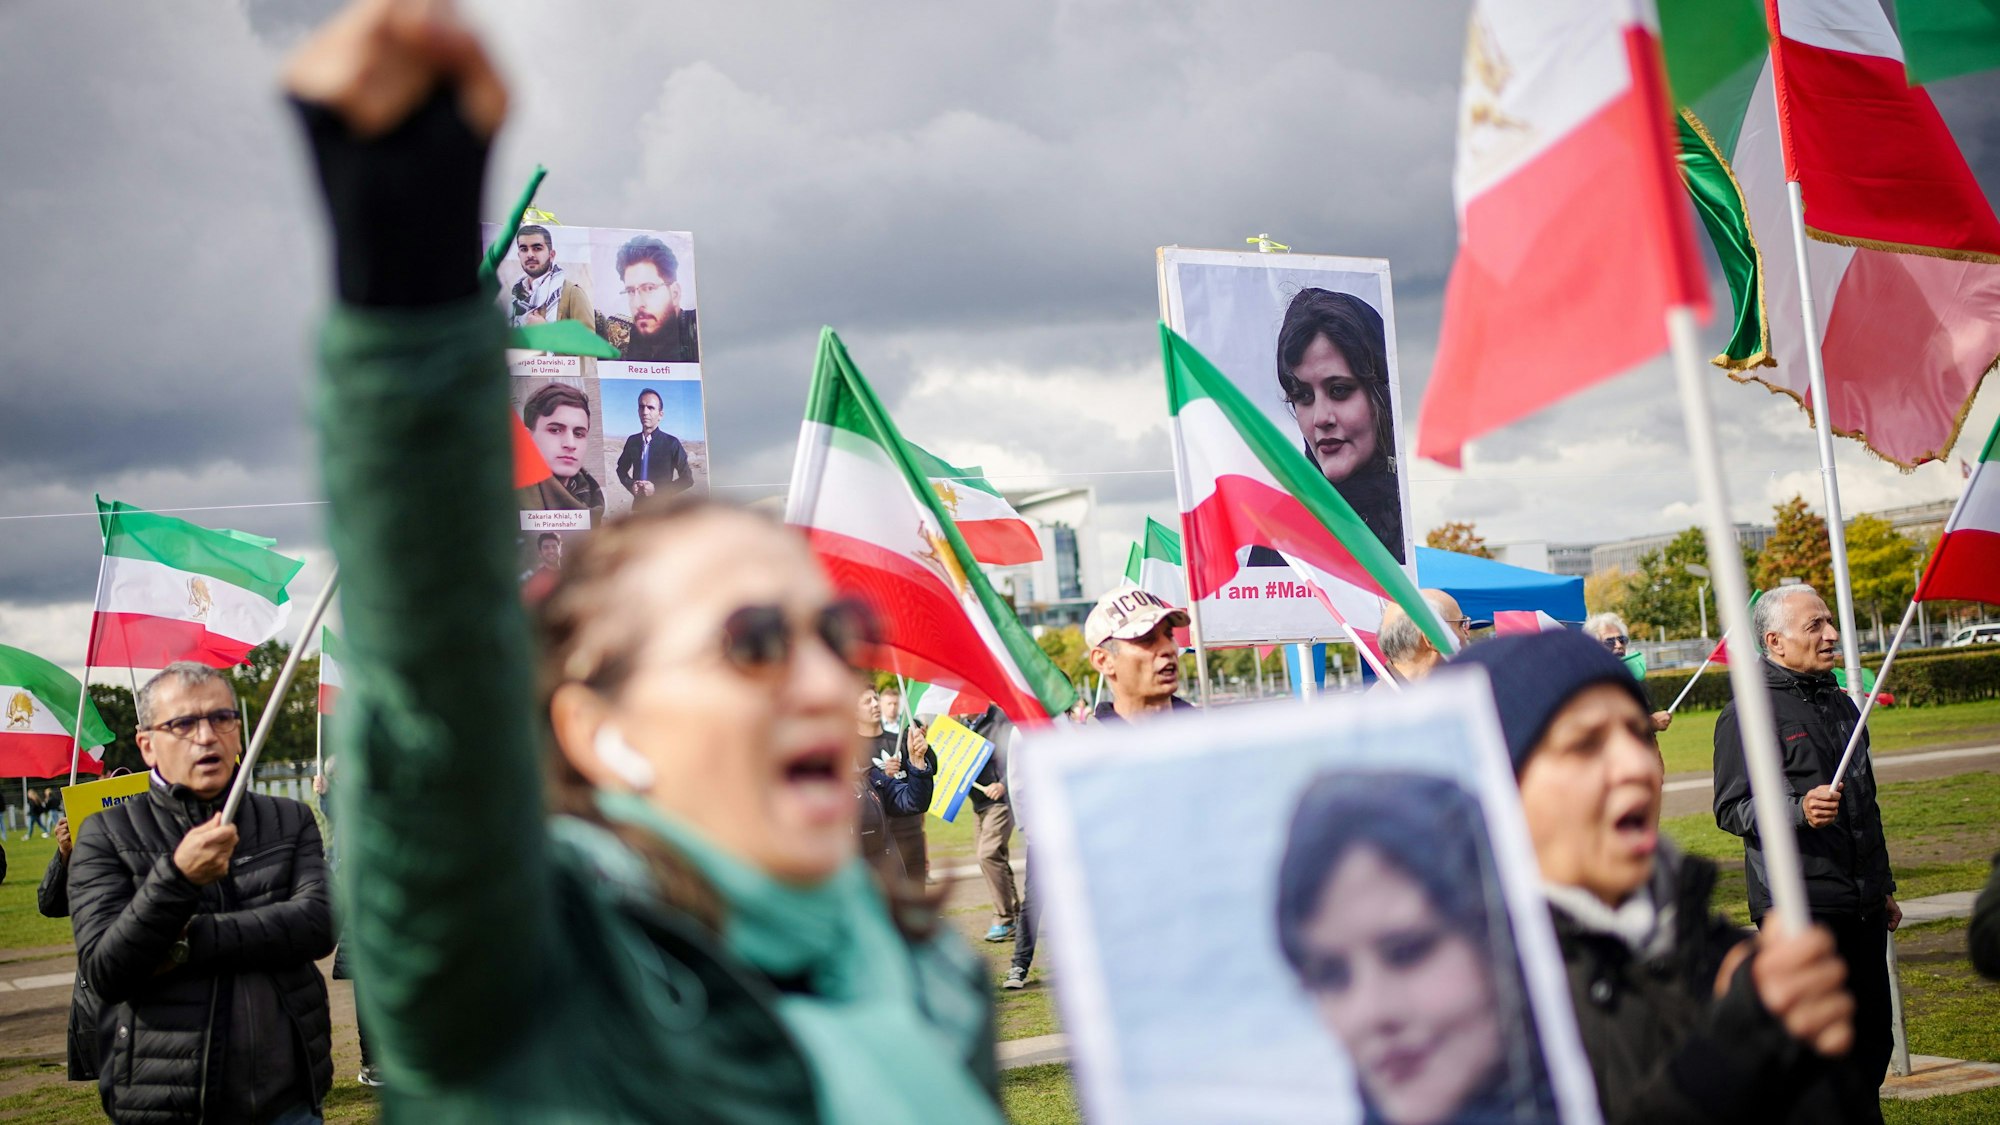 Mit Plakaten von Masha Amini demonstrieren Teilnehmer für Demokratie und Freiheit im Iran auf der Reichstagswiese in Berlin.